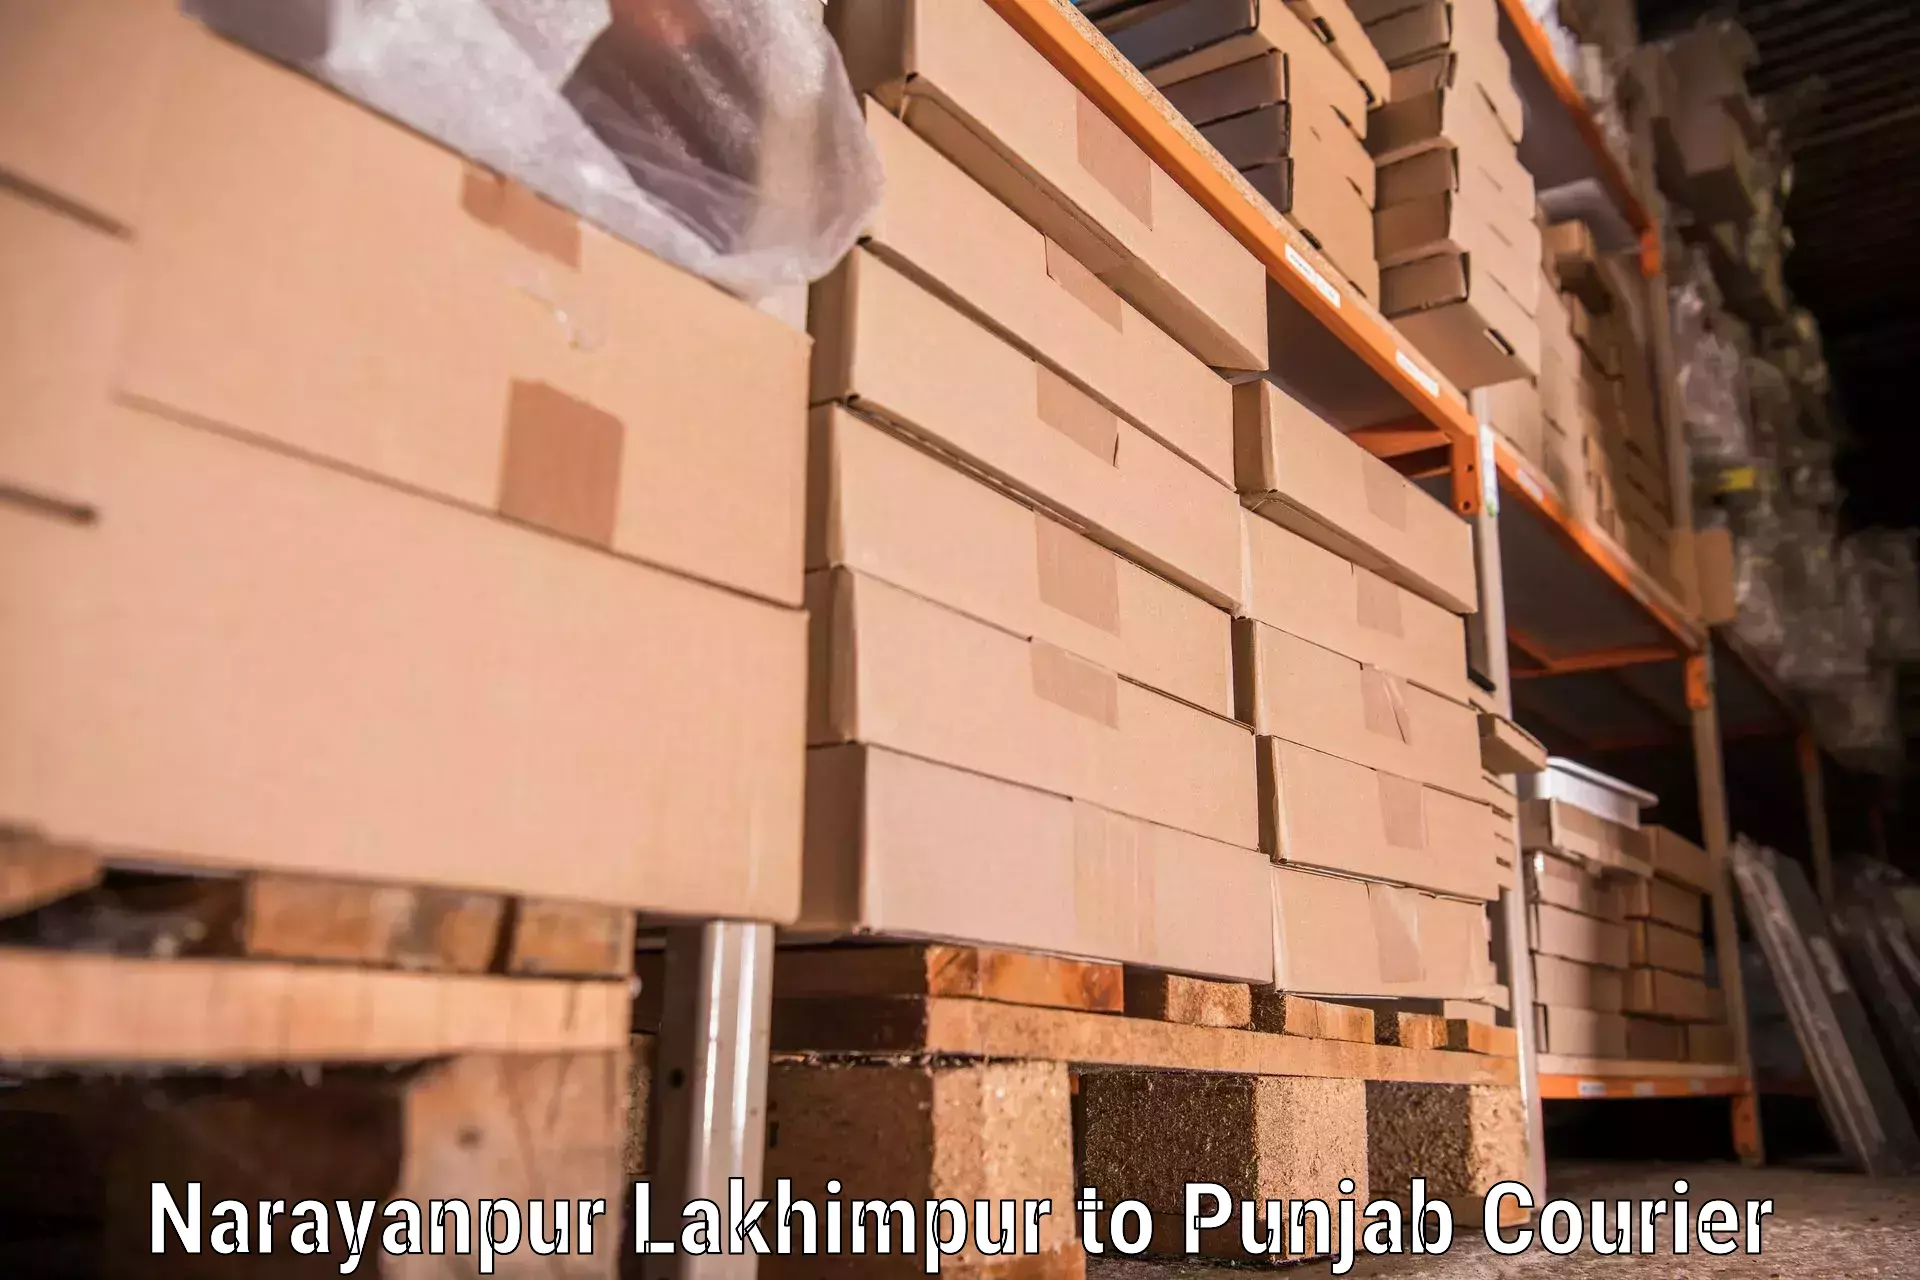 Professional furniture transport Narayanpur Lakhimpur to Punjab